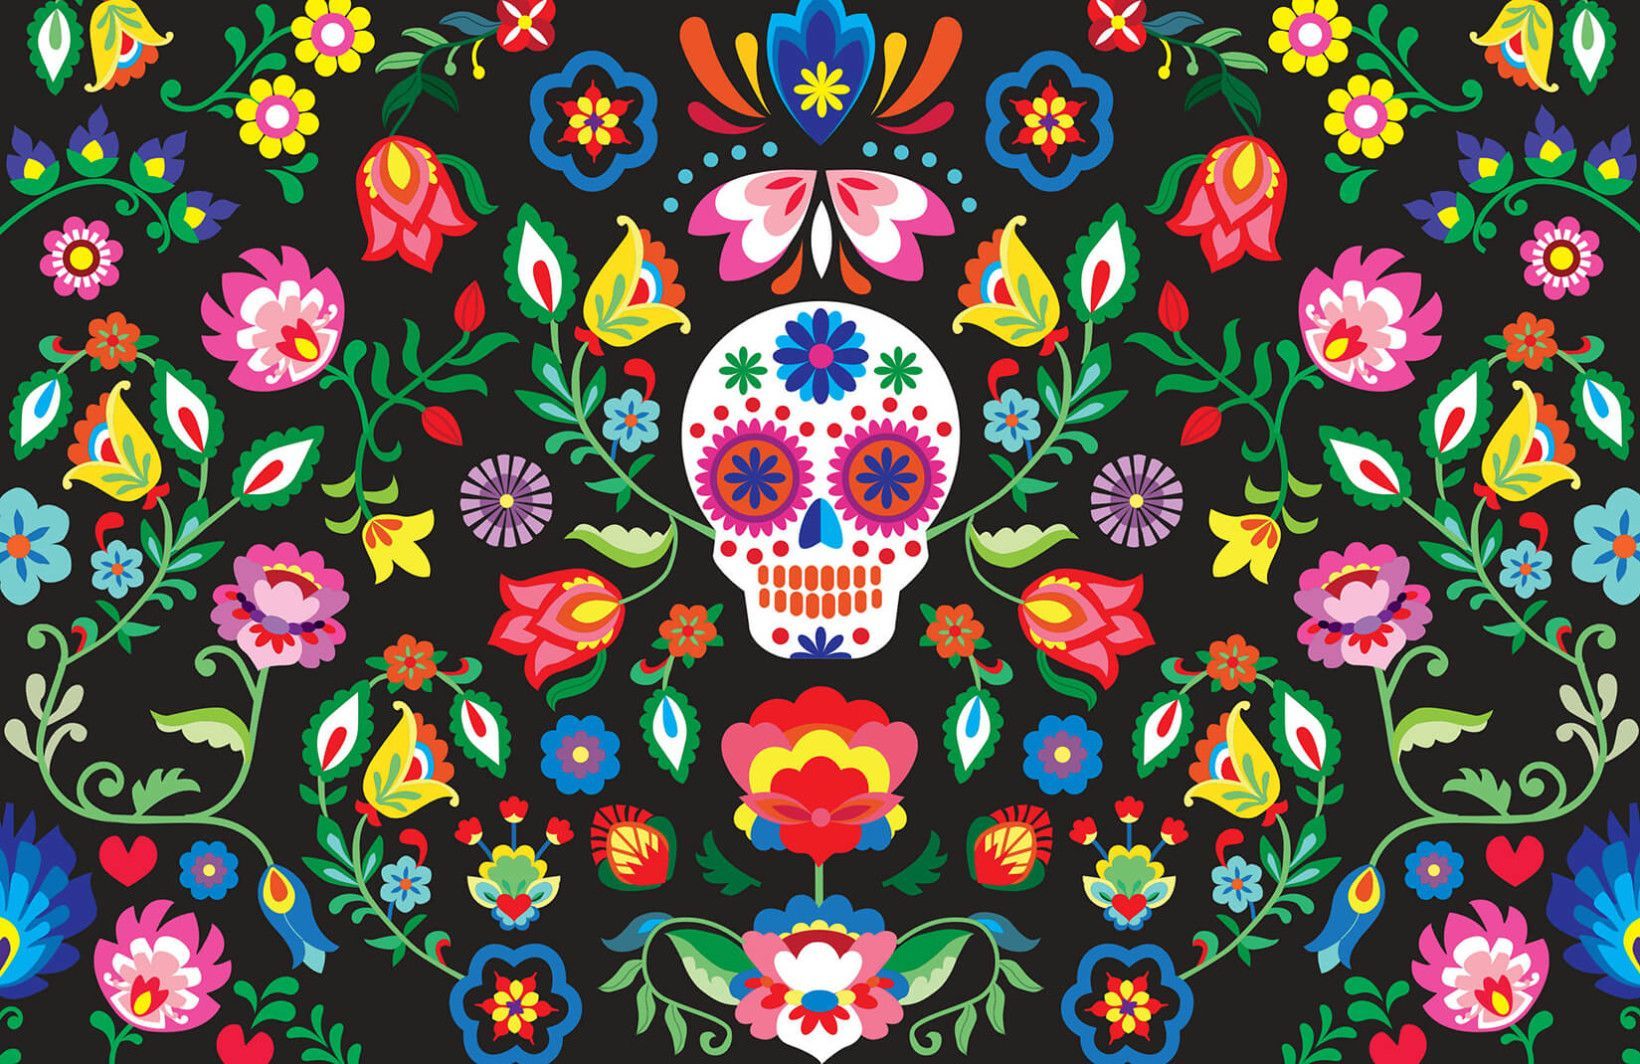 Mexican Sugar Skull Wallpaper. MuralsWallpaper. Sugar skull